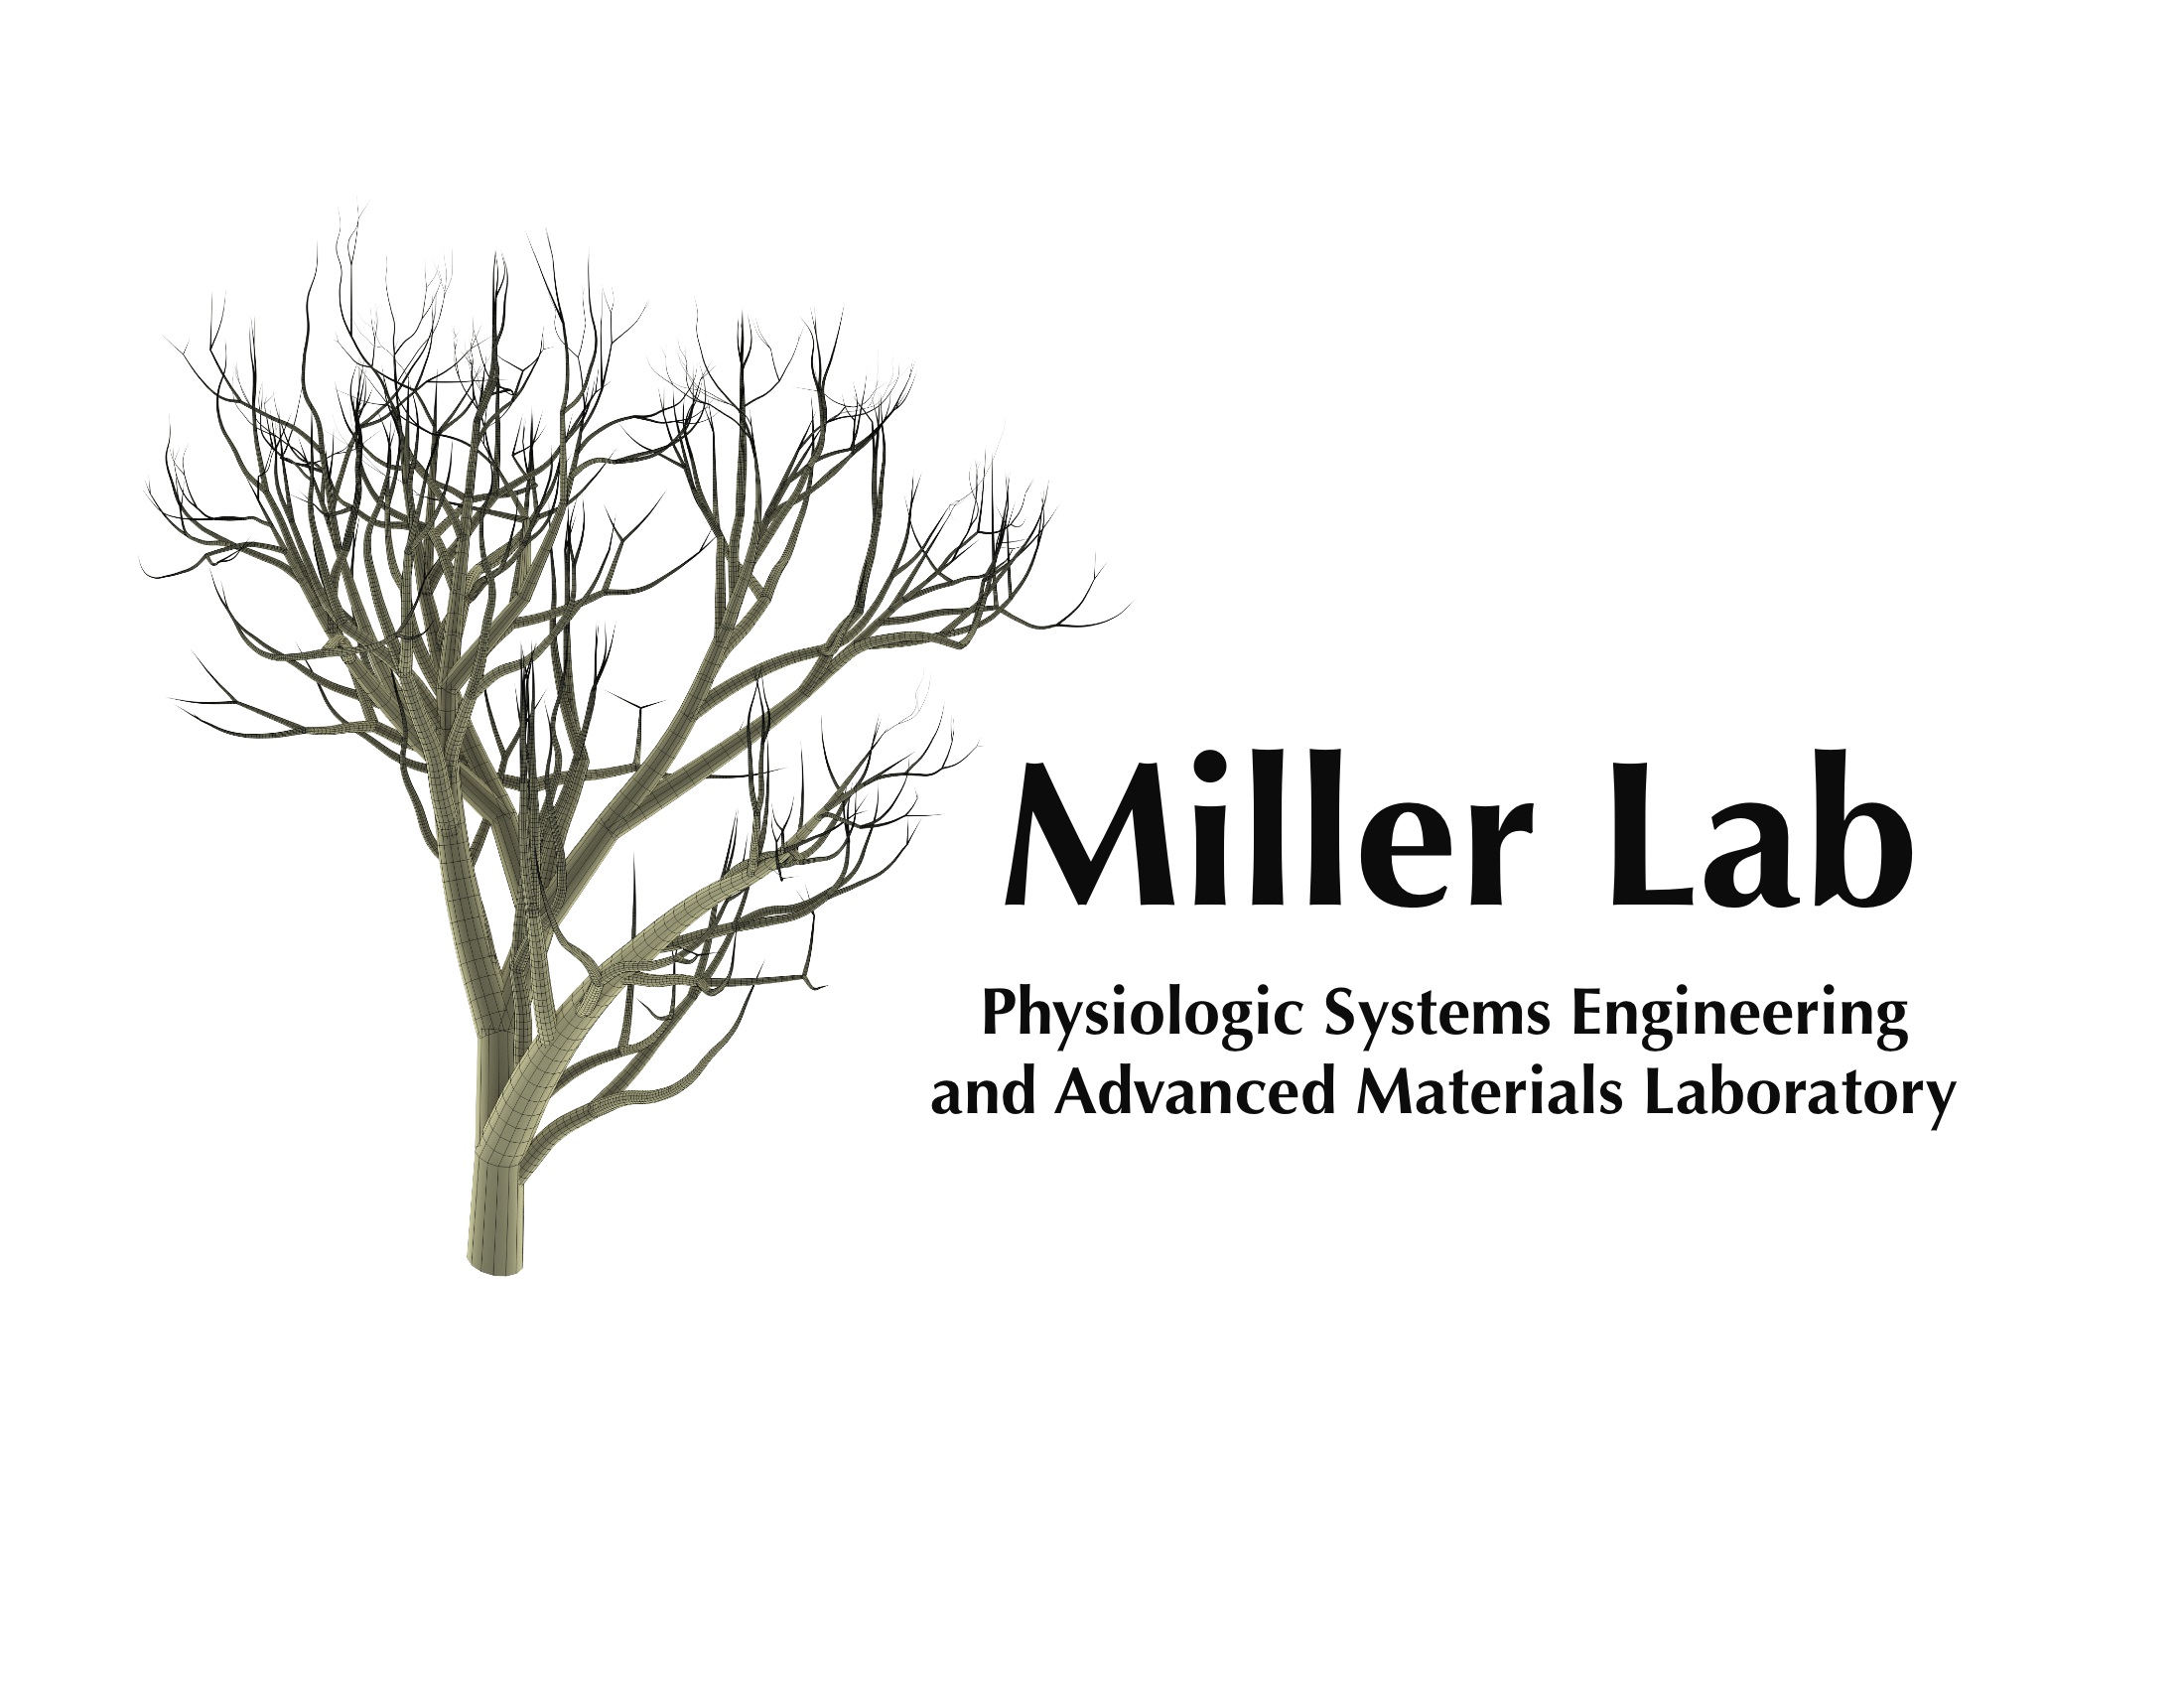 MillerLab_logo.jpg